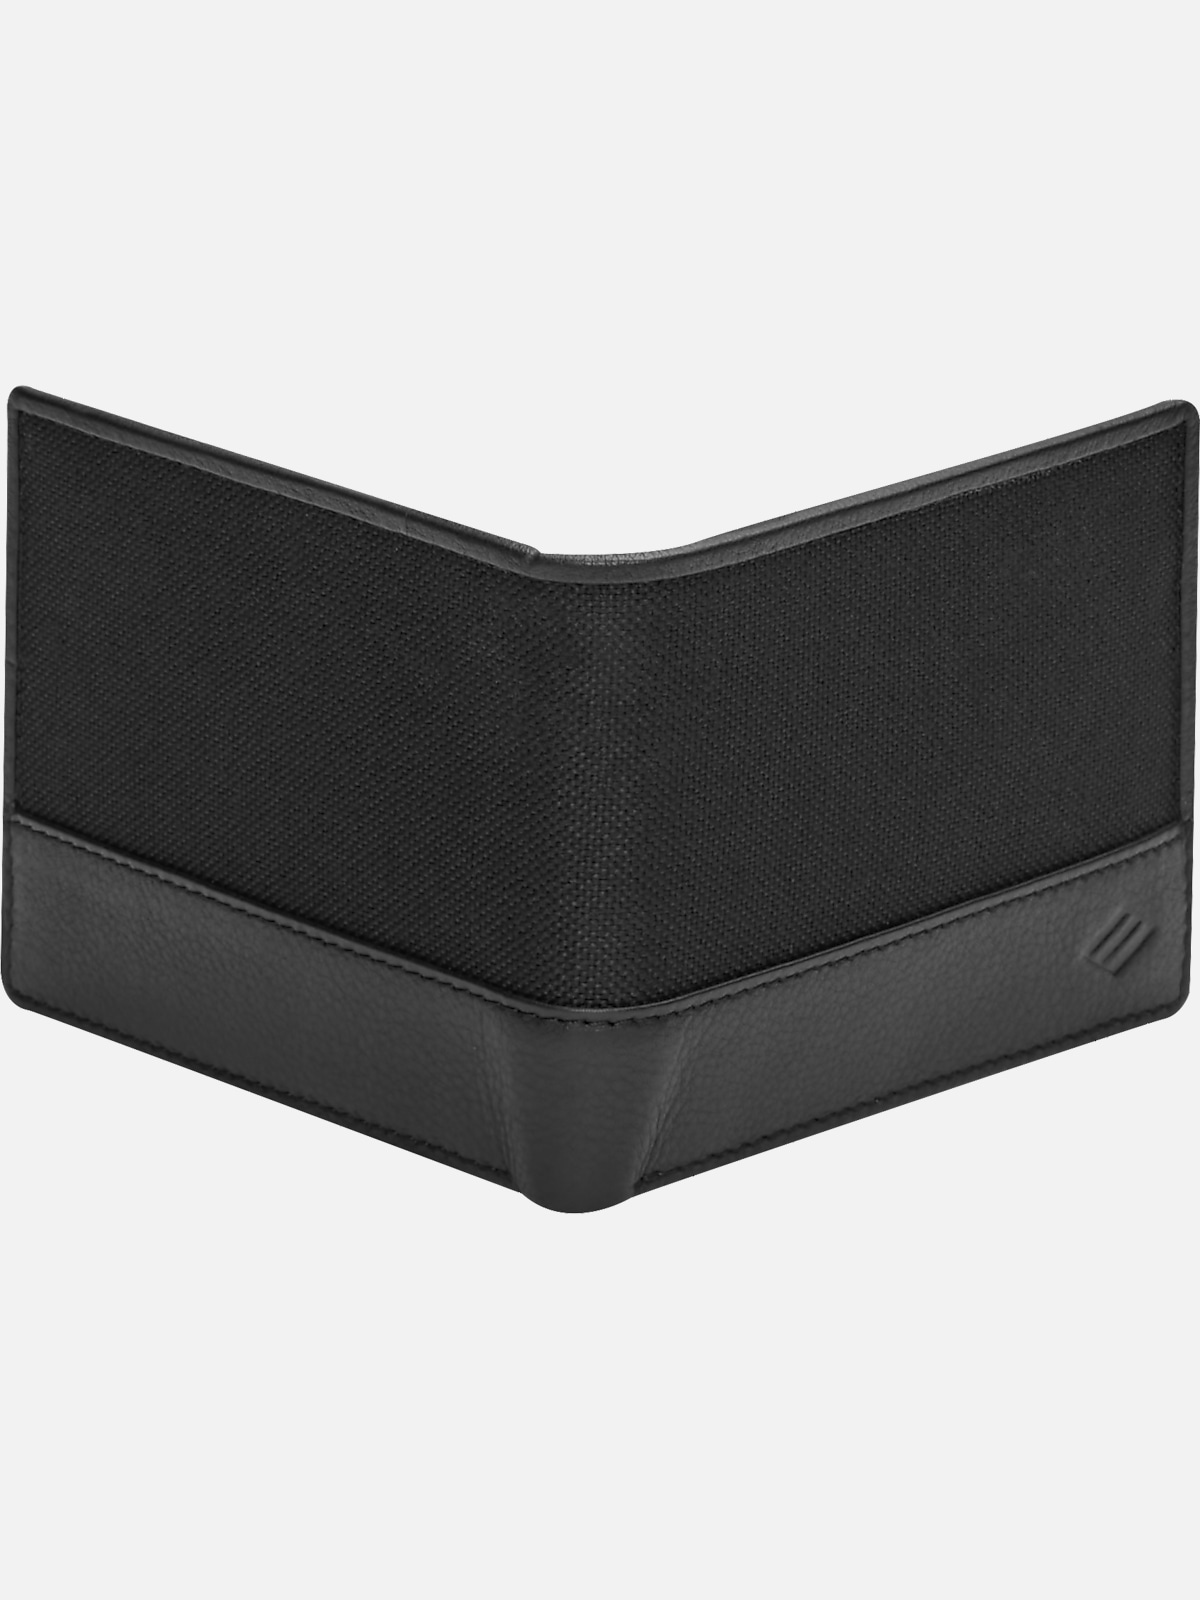 Joseph Abboud Leather Accent Bi-Fold Wallet | Wallets| Men's Wearhouse